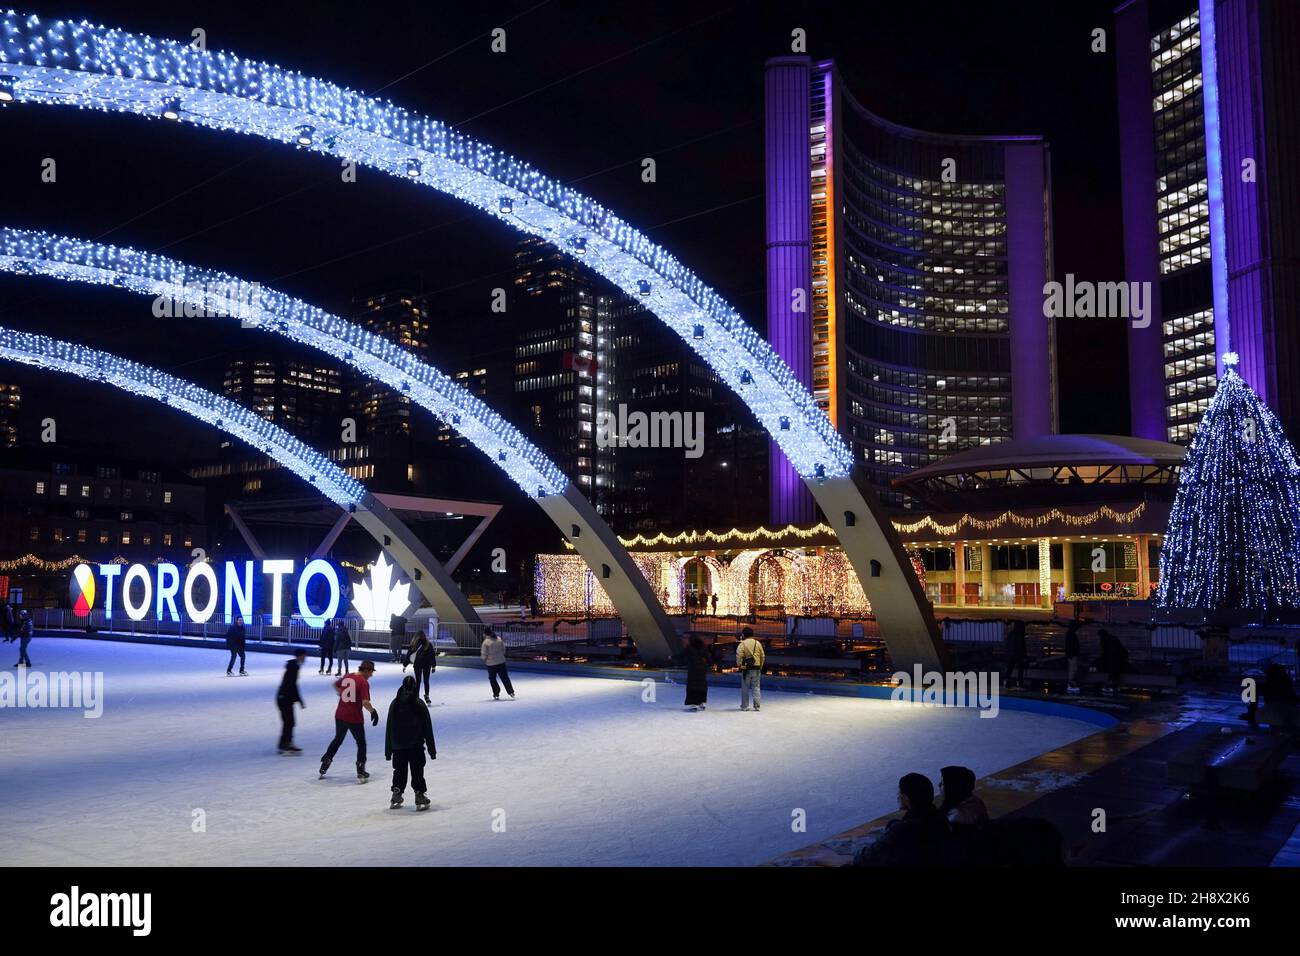 Toronto, Canadá - 30 de noviembre de 2021: La plaza del Ayuntamiento de Toronto está iluminada con luces brillantes en colores alternos para la temporada de Navidad. Foto de stock